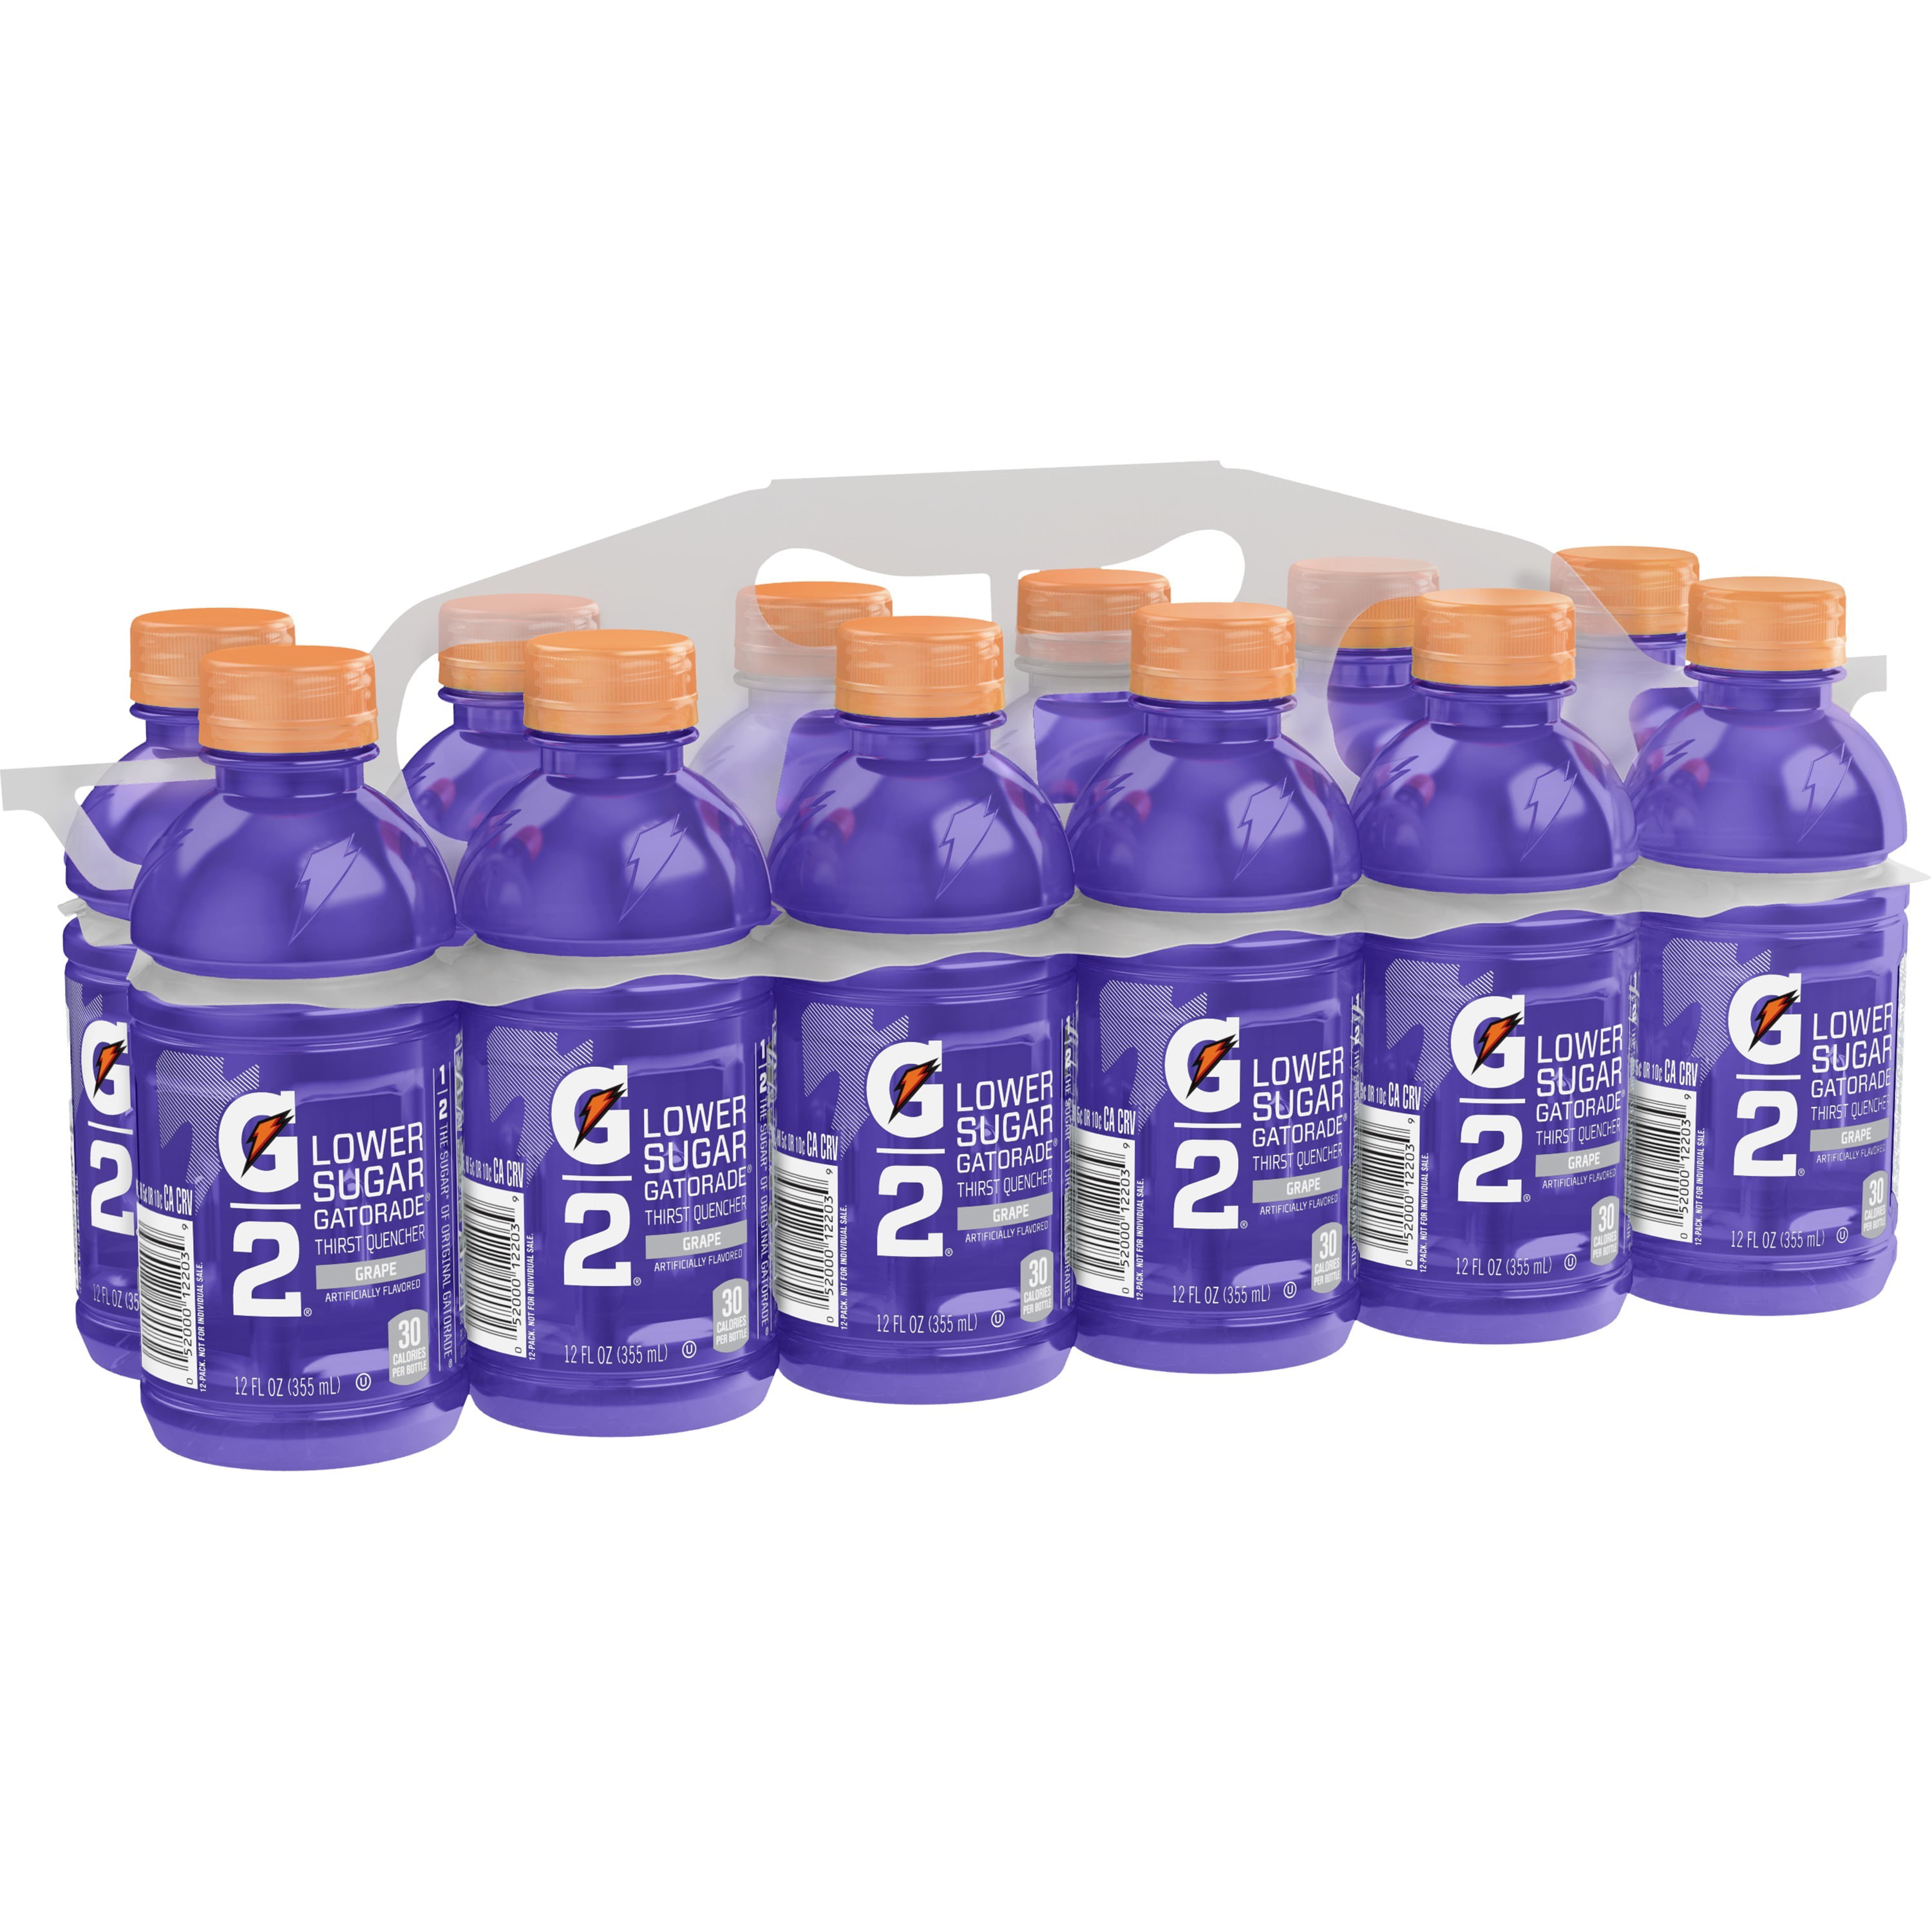 Gatorade G2 Lower Sugar Grape Thirst Quencher Sports Drink, 12 oz, 12 Pack Bottles